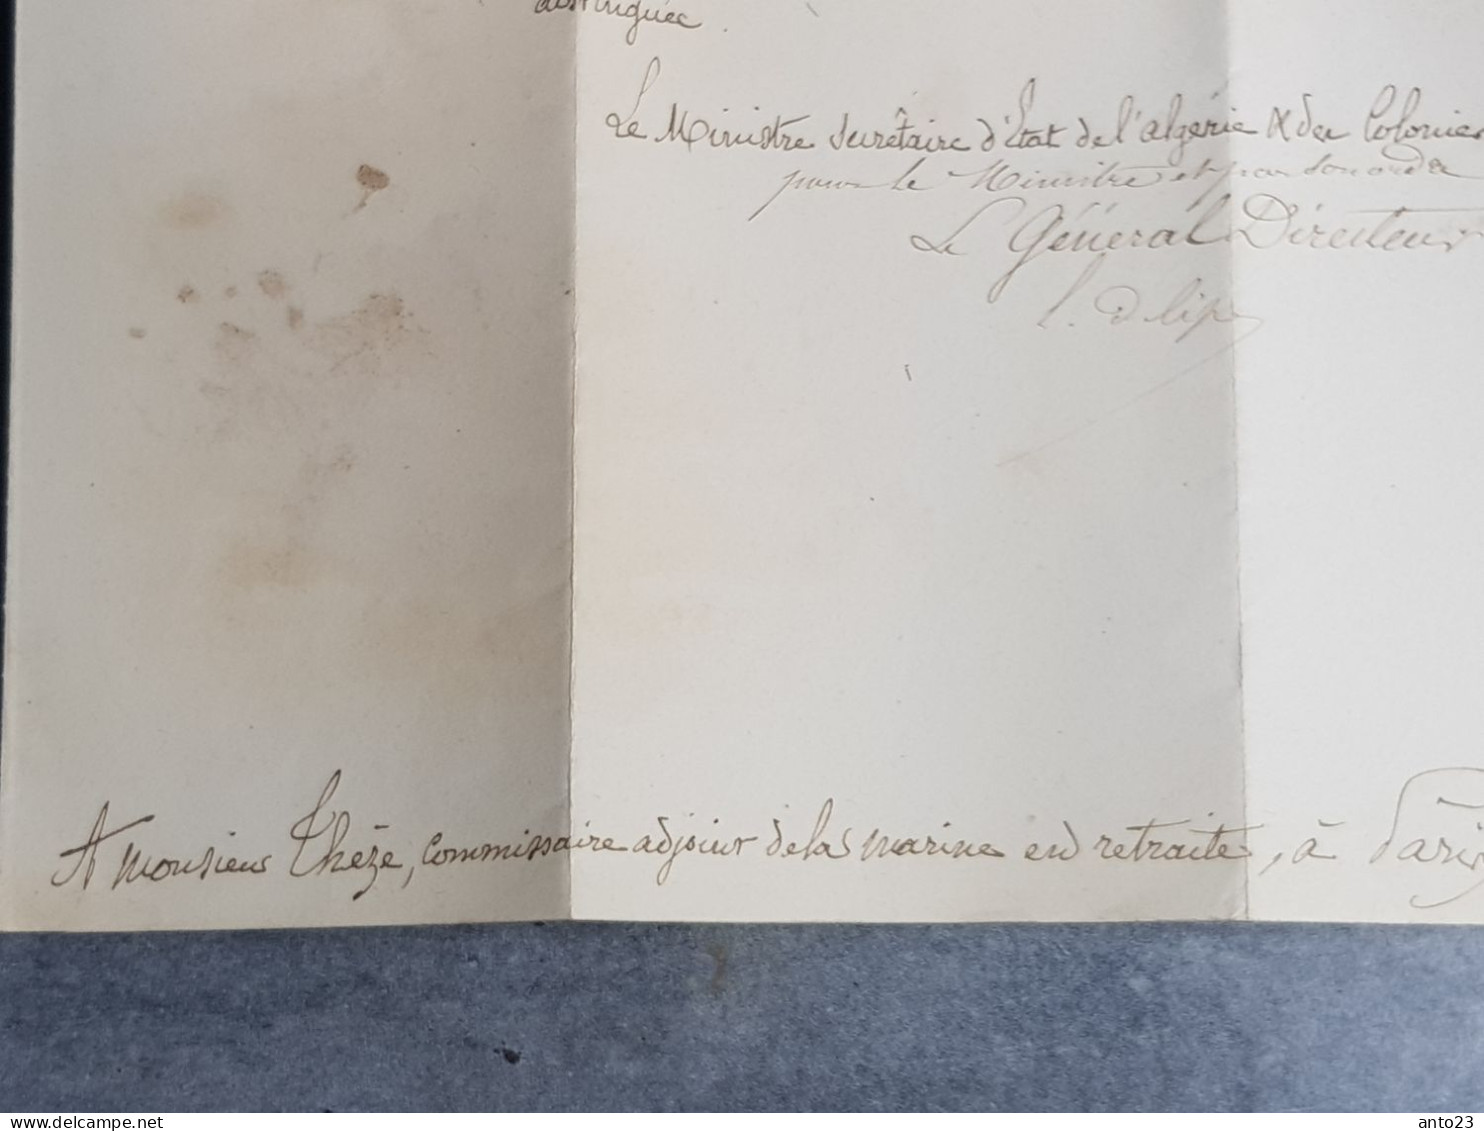 lettre du ministère de l Algérie et des colonies 30 janvier 1860 marque postale - concernant chirurgien de la marine -